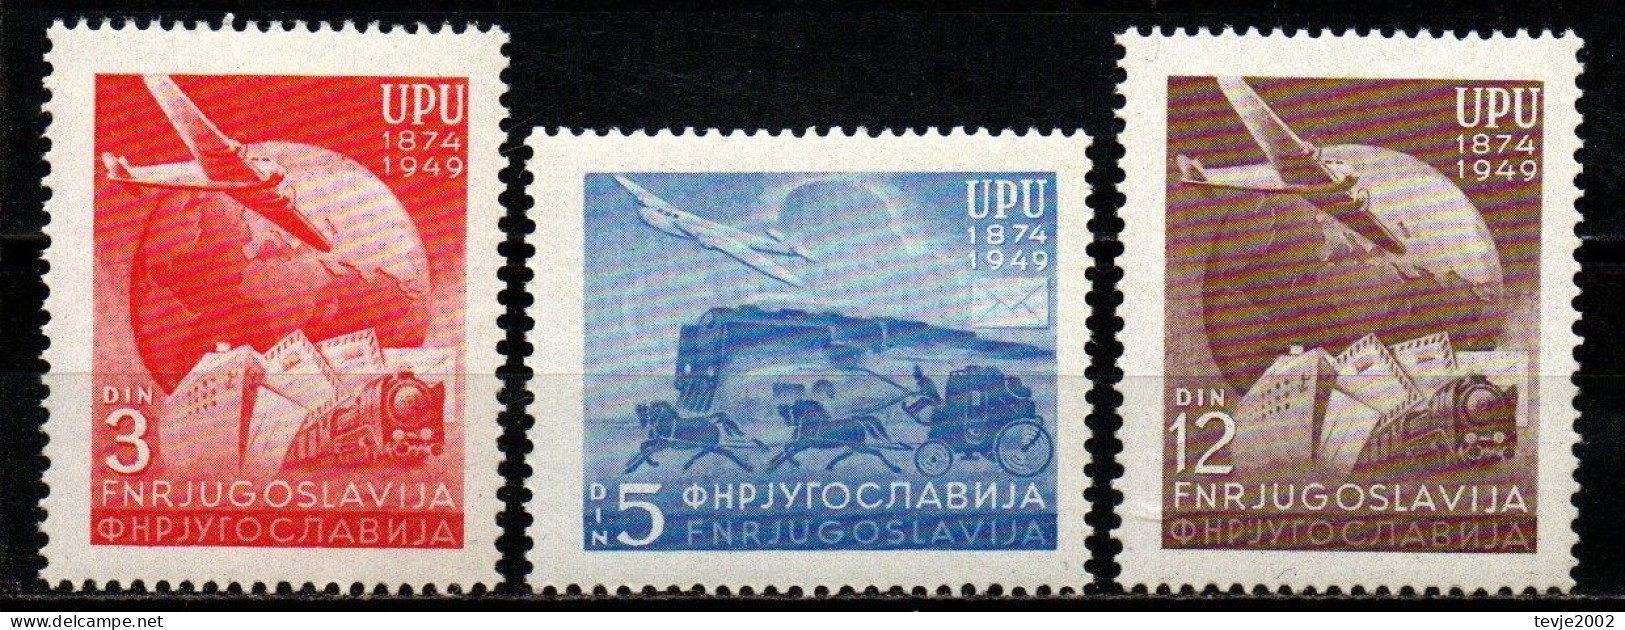 Jugoslawien 1949 - Mi.Nr. 578 - 580 - Postfrisch MNH - UPU - U.P.U.